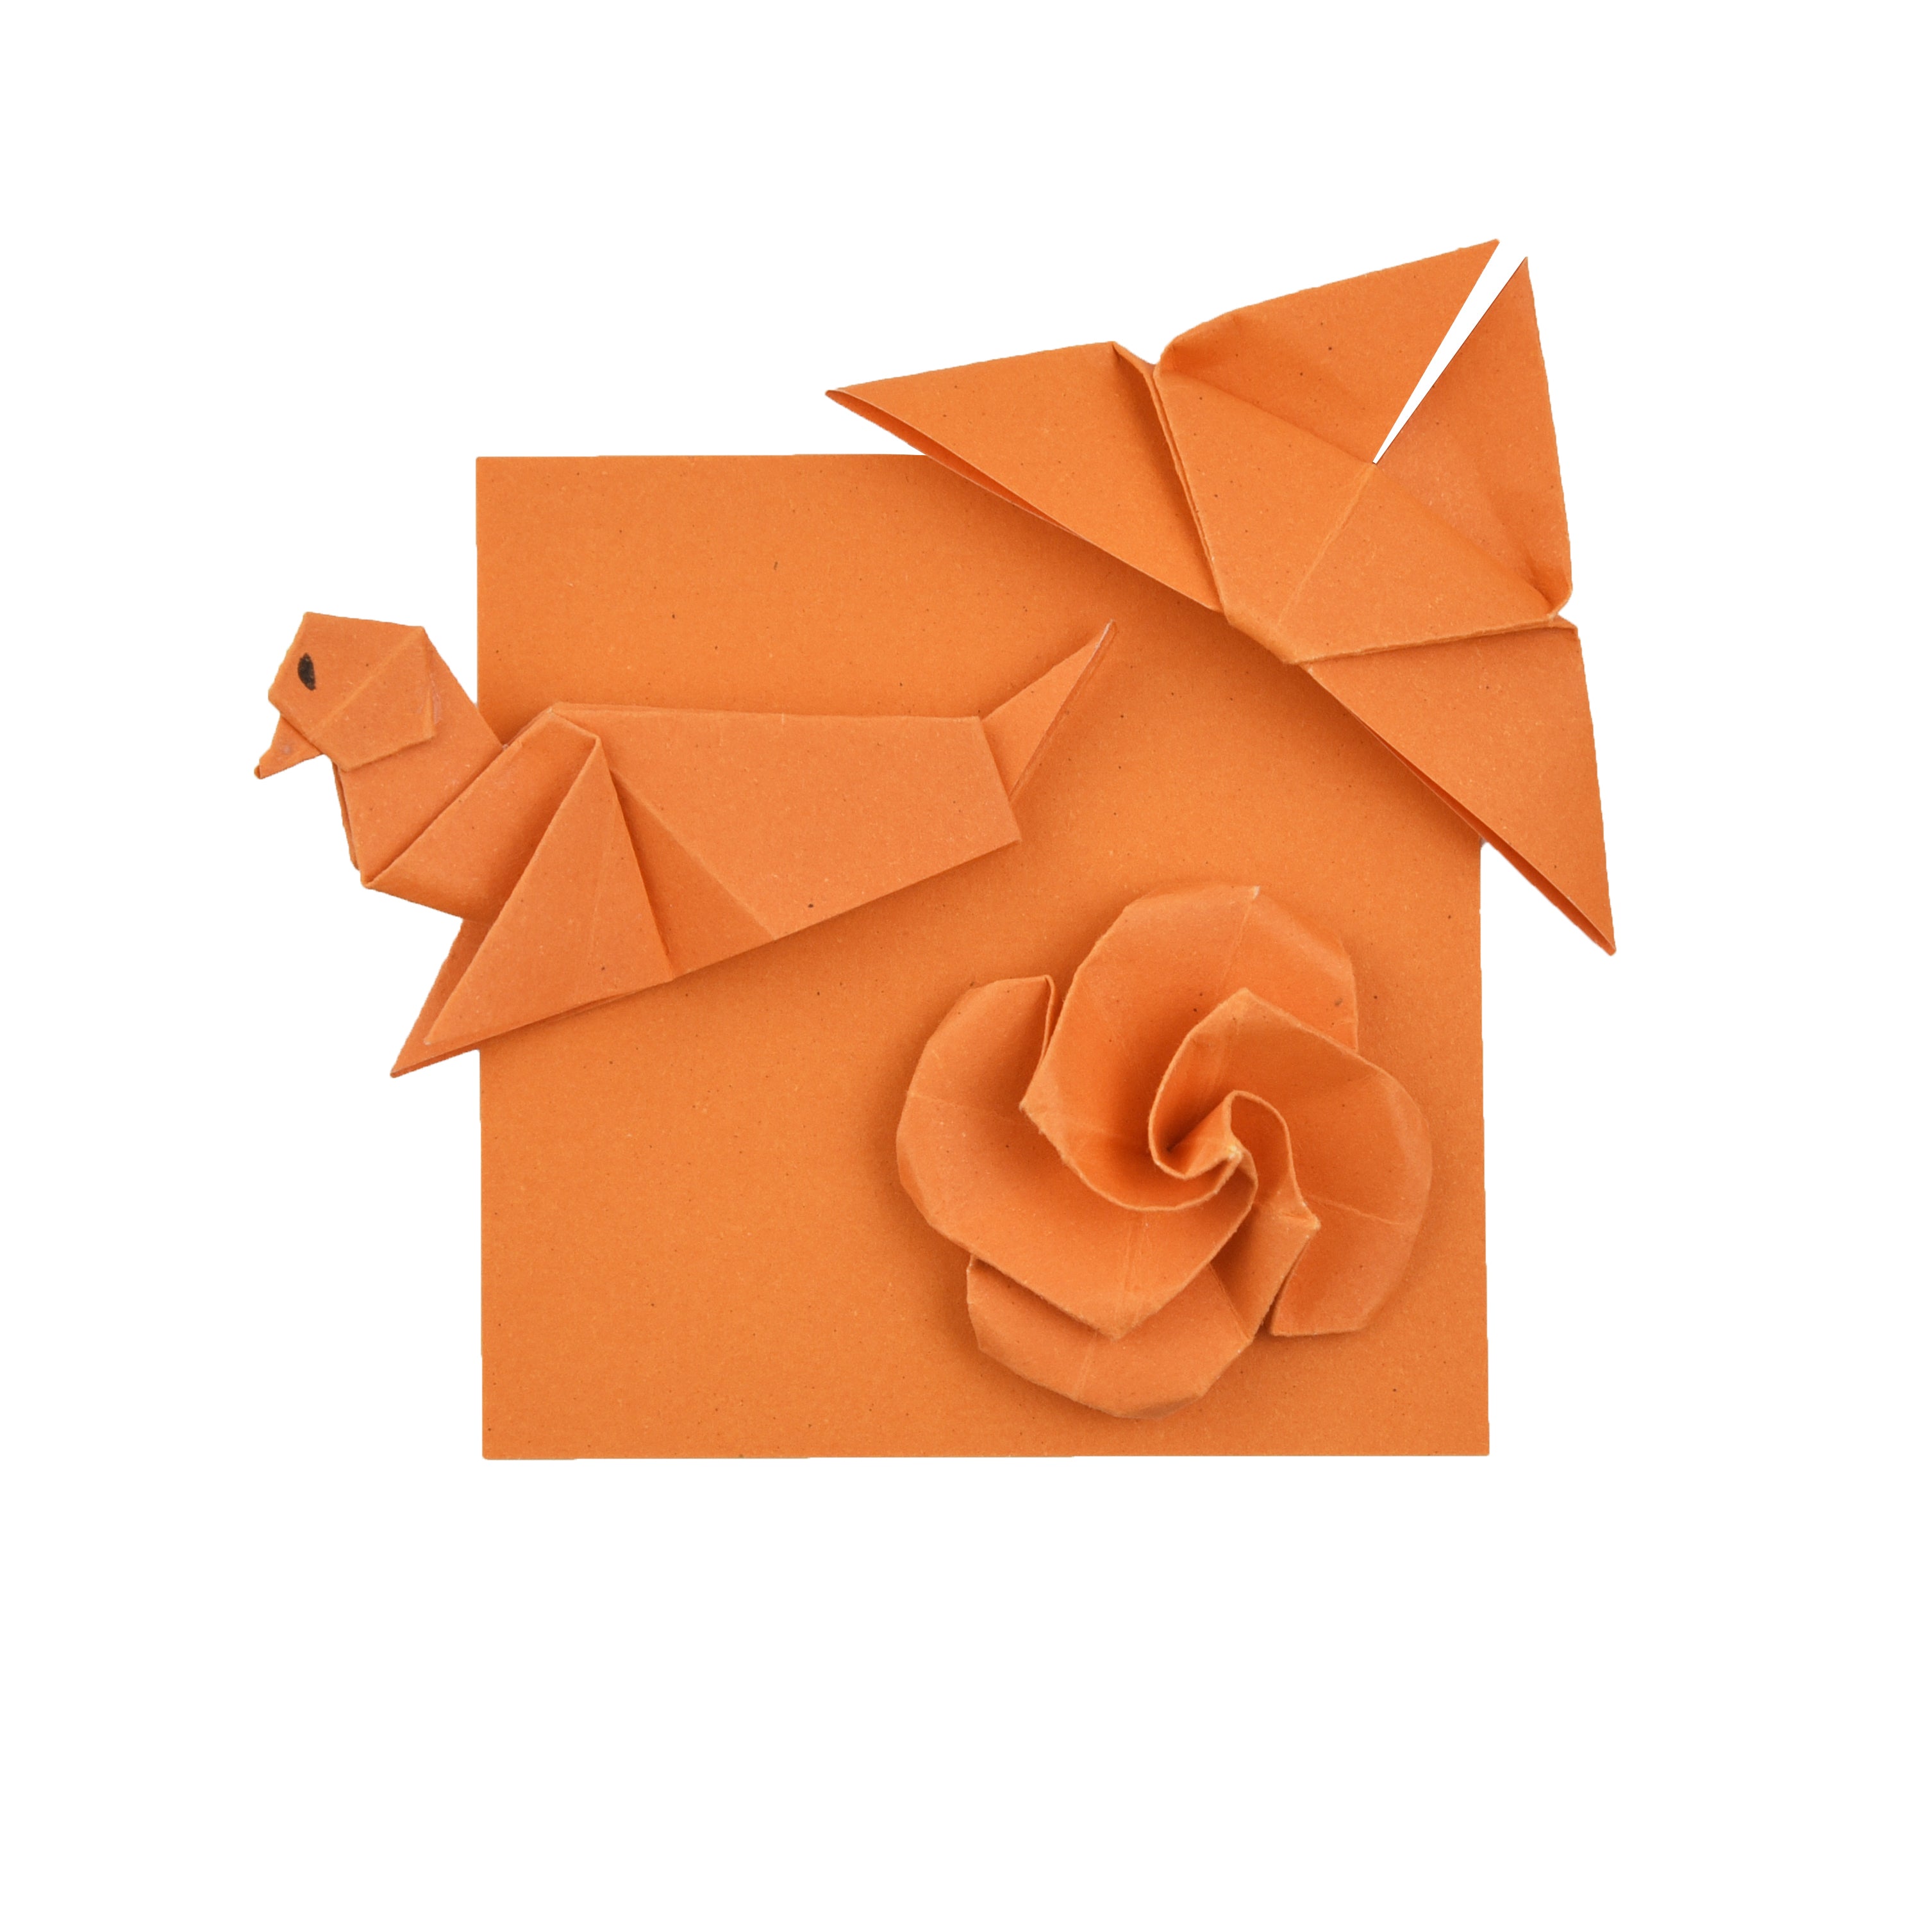 100 fogli di carta origami - 6x6 pollici - Confezione di carta quadrata per piegare, gru origami e decorazioni - S03